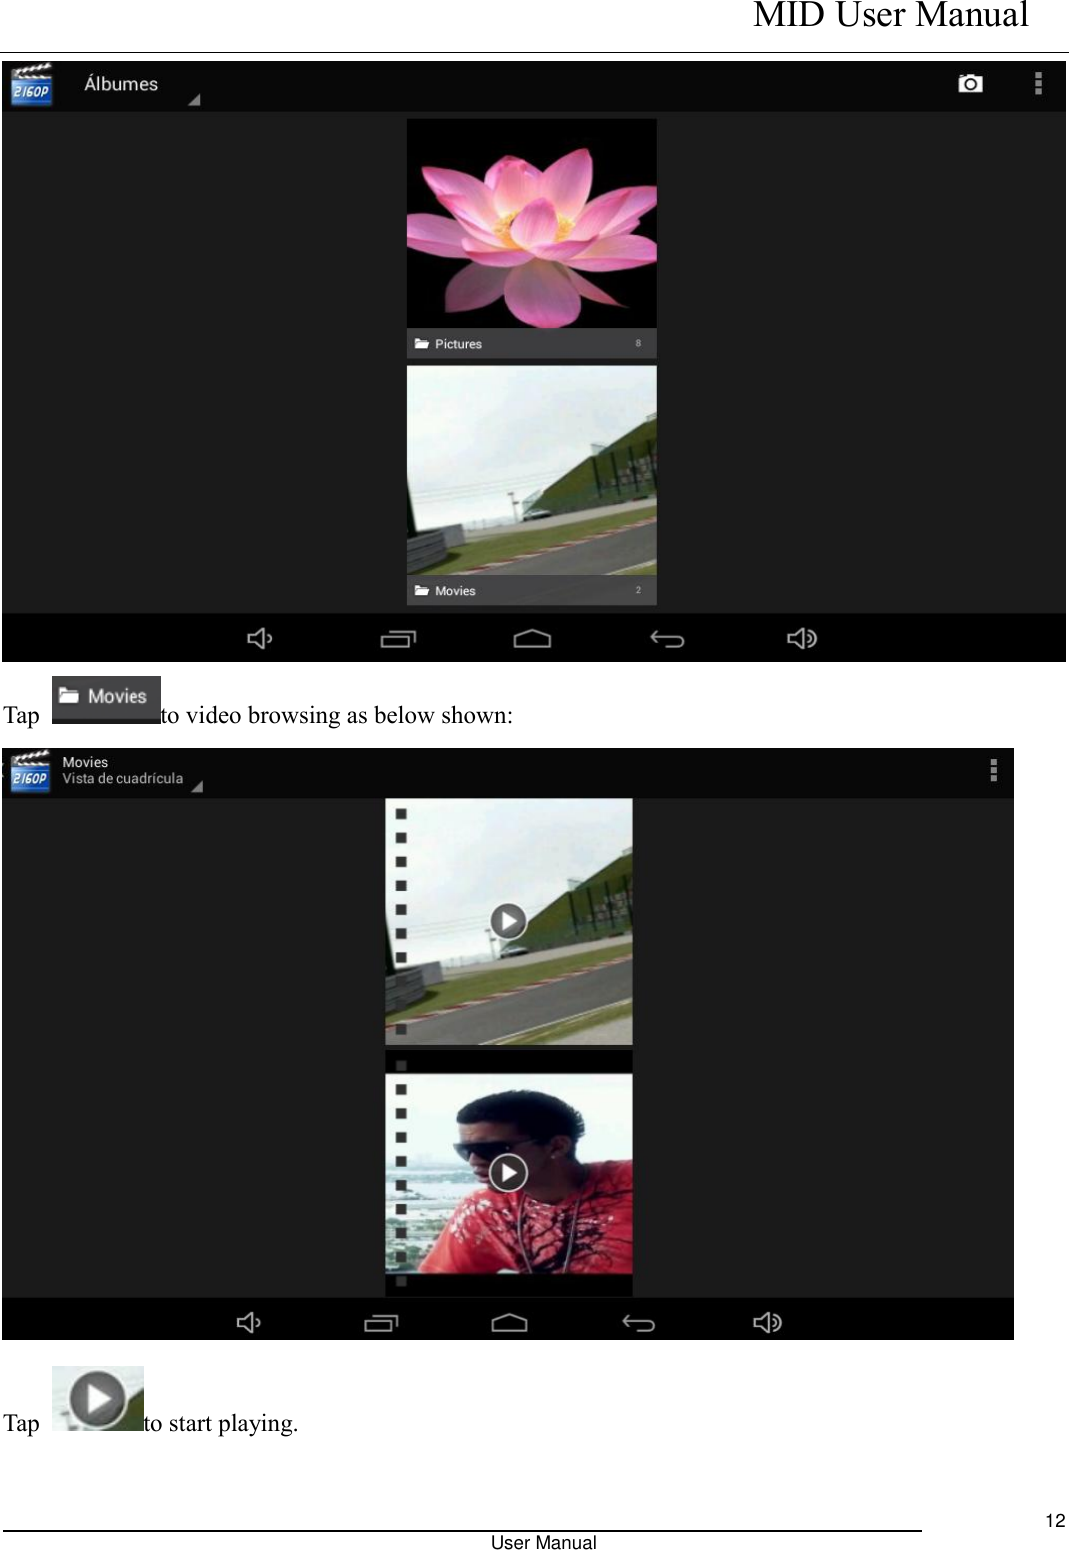    MID User Manual                                                                                                            User Manual     12  Tap  to video browsing as below shown:    Tap  to start playing.  